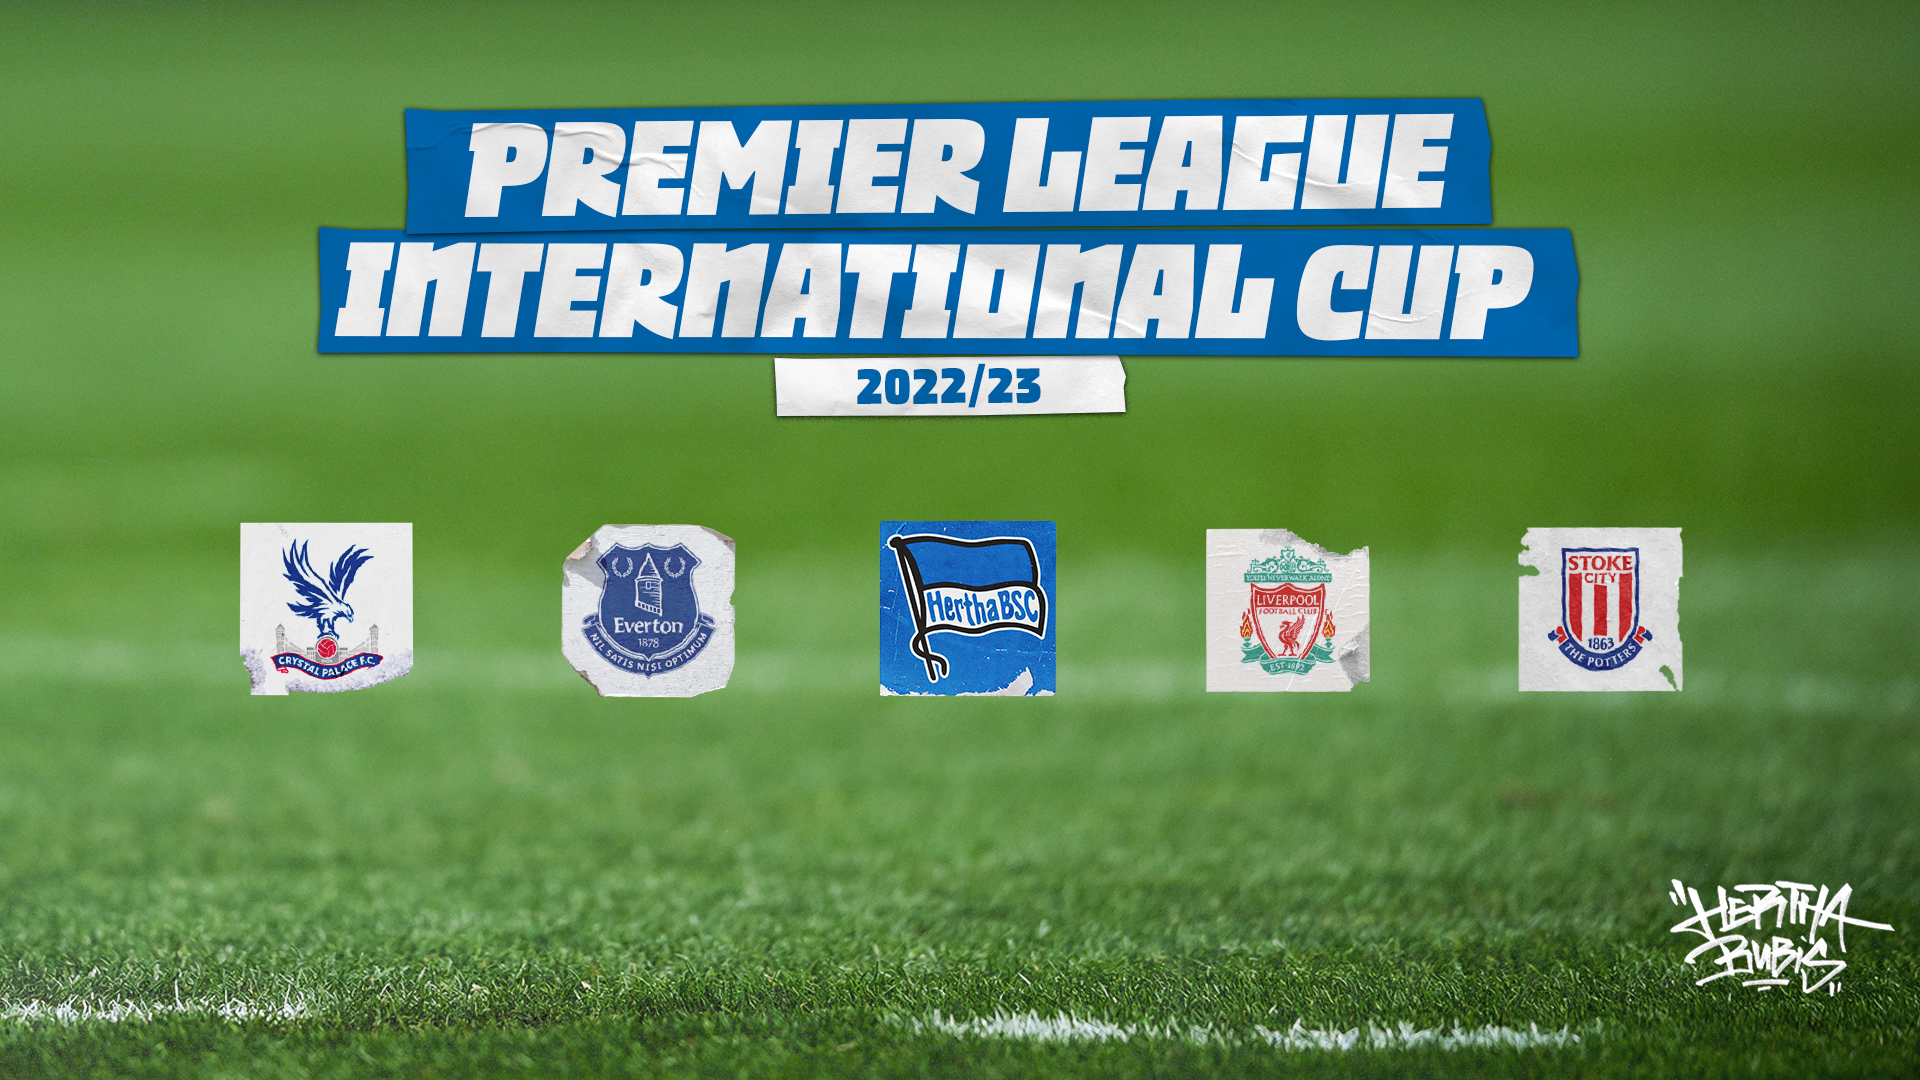 Die Logos von Crystal Palace, Everton, Hertha BSC, Stoke City und Liverpool.